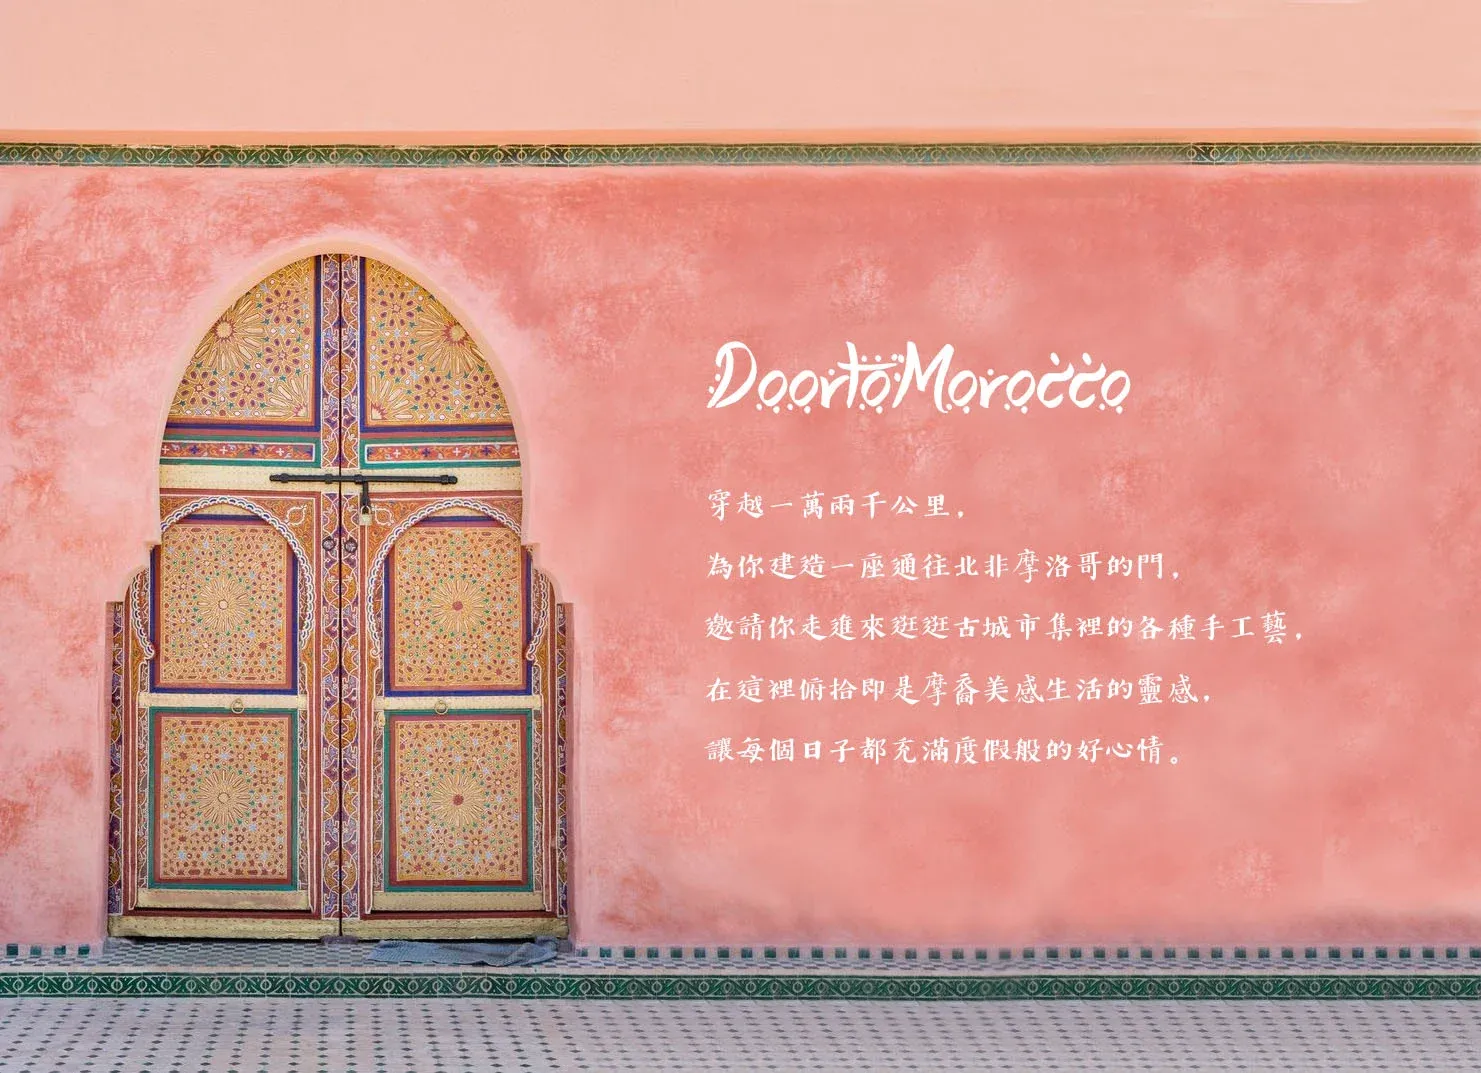 駝峰牌薄荷茶 DoorToMorocco